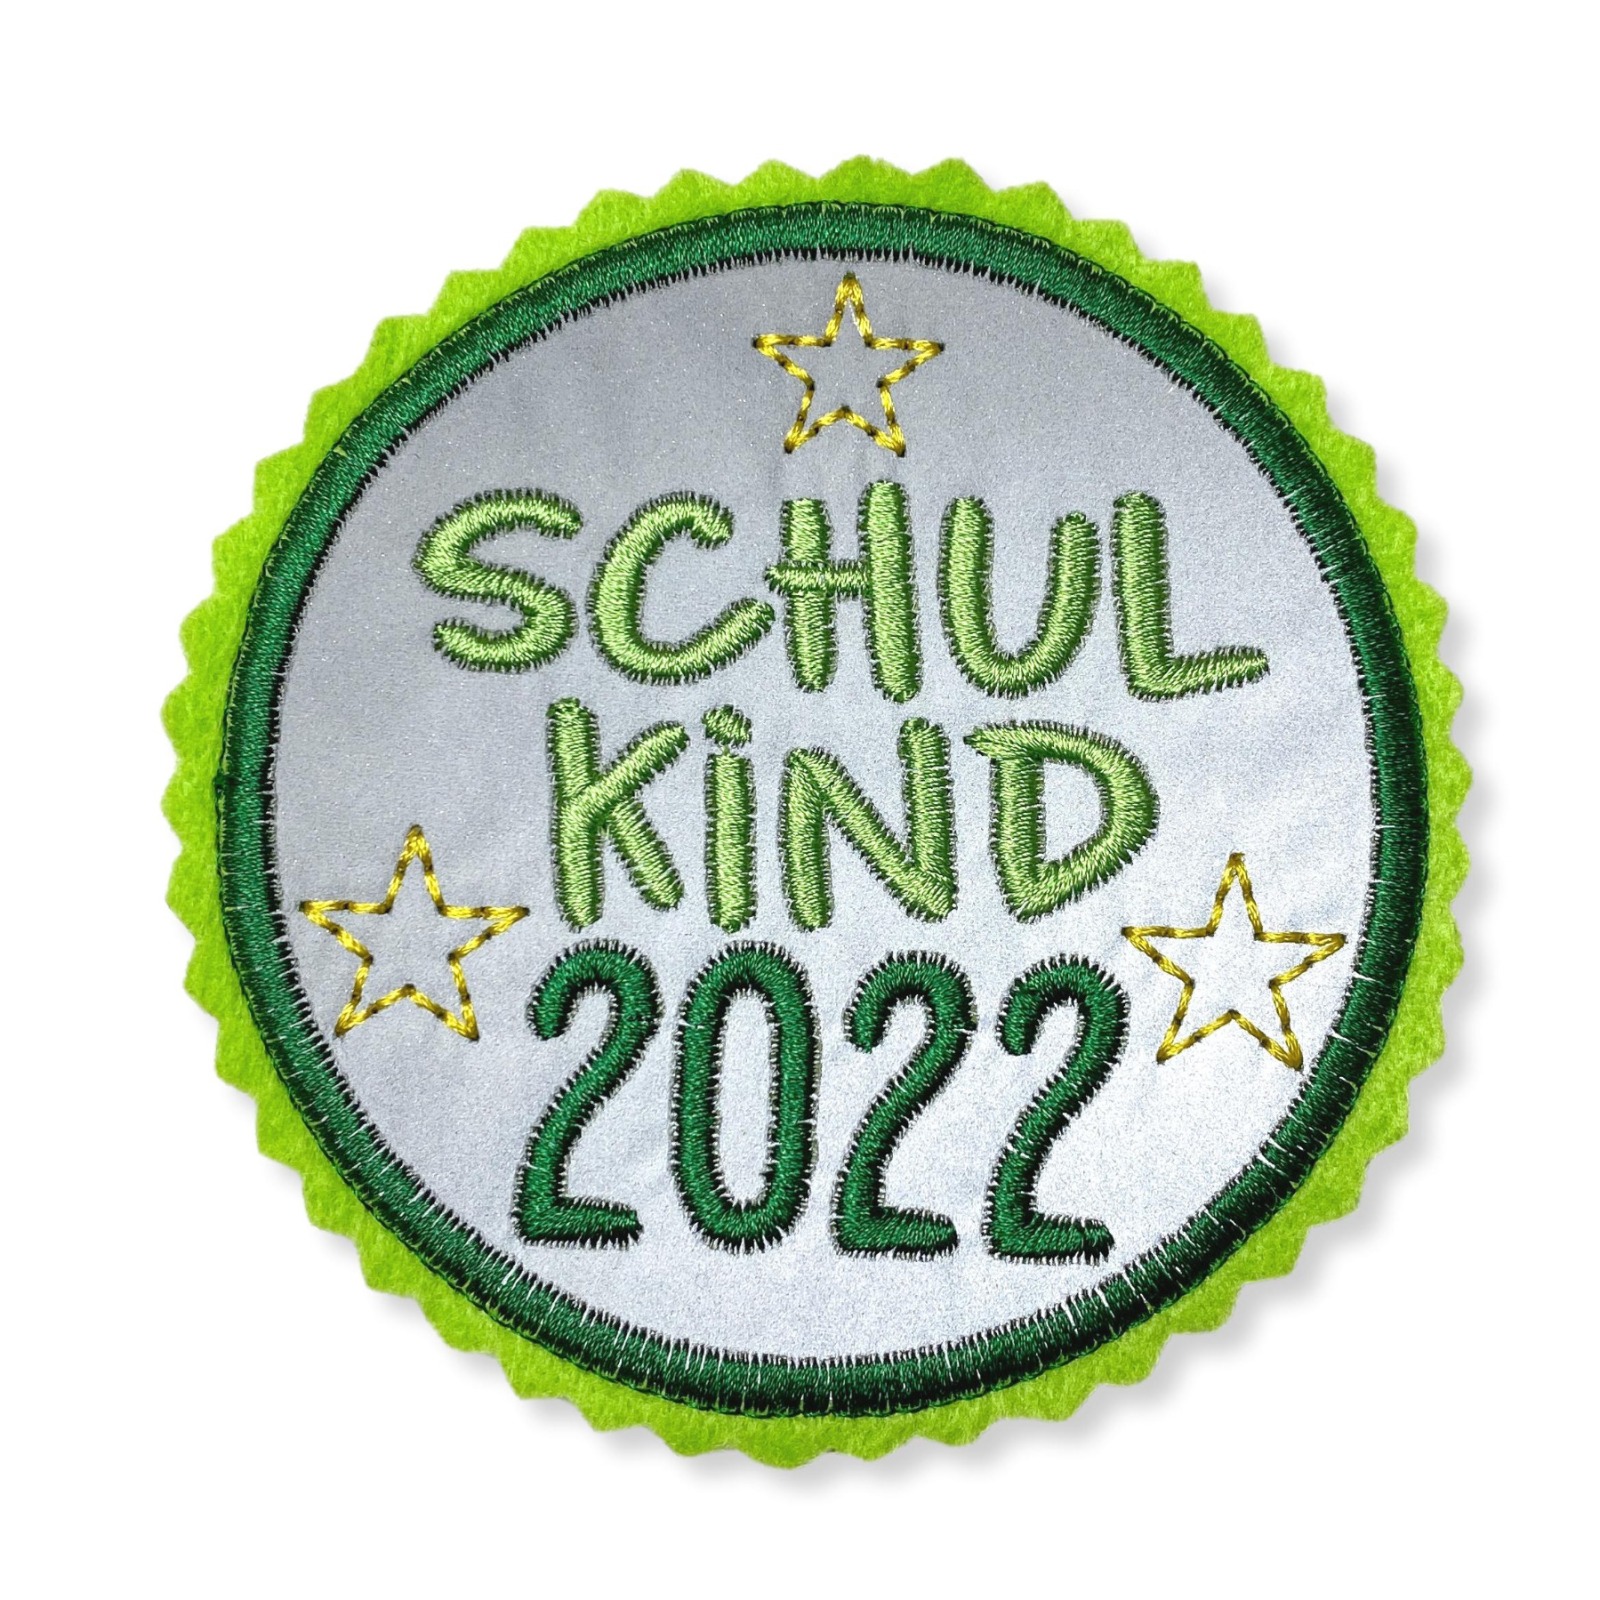 Kletti Schulkind 2022 10cm Durchmesser Reflektorstoff hellgrün dunkelgrün Einschulung Schulmappe